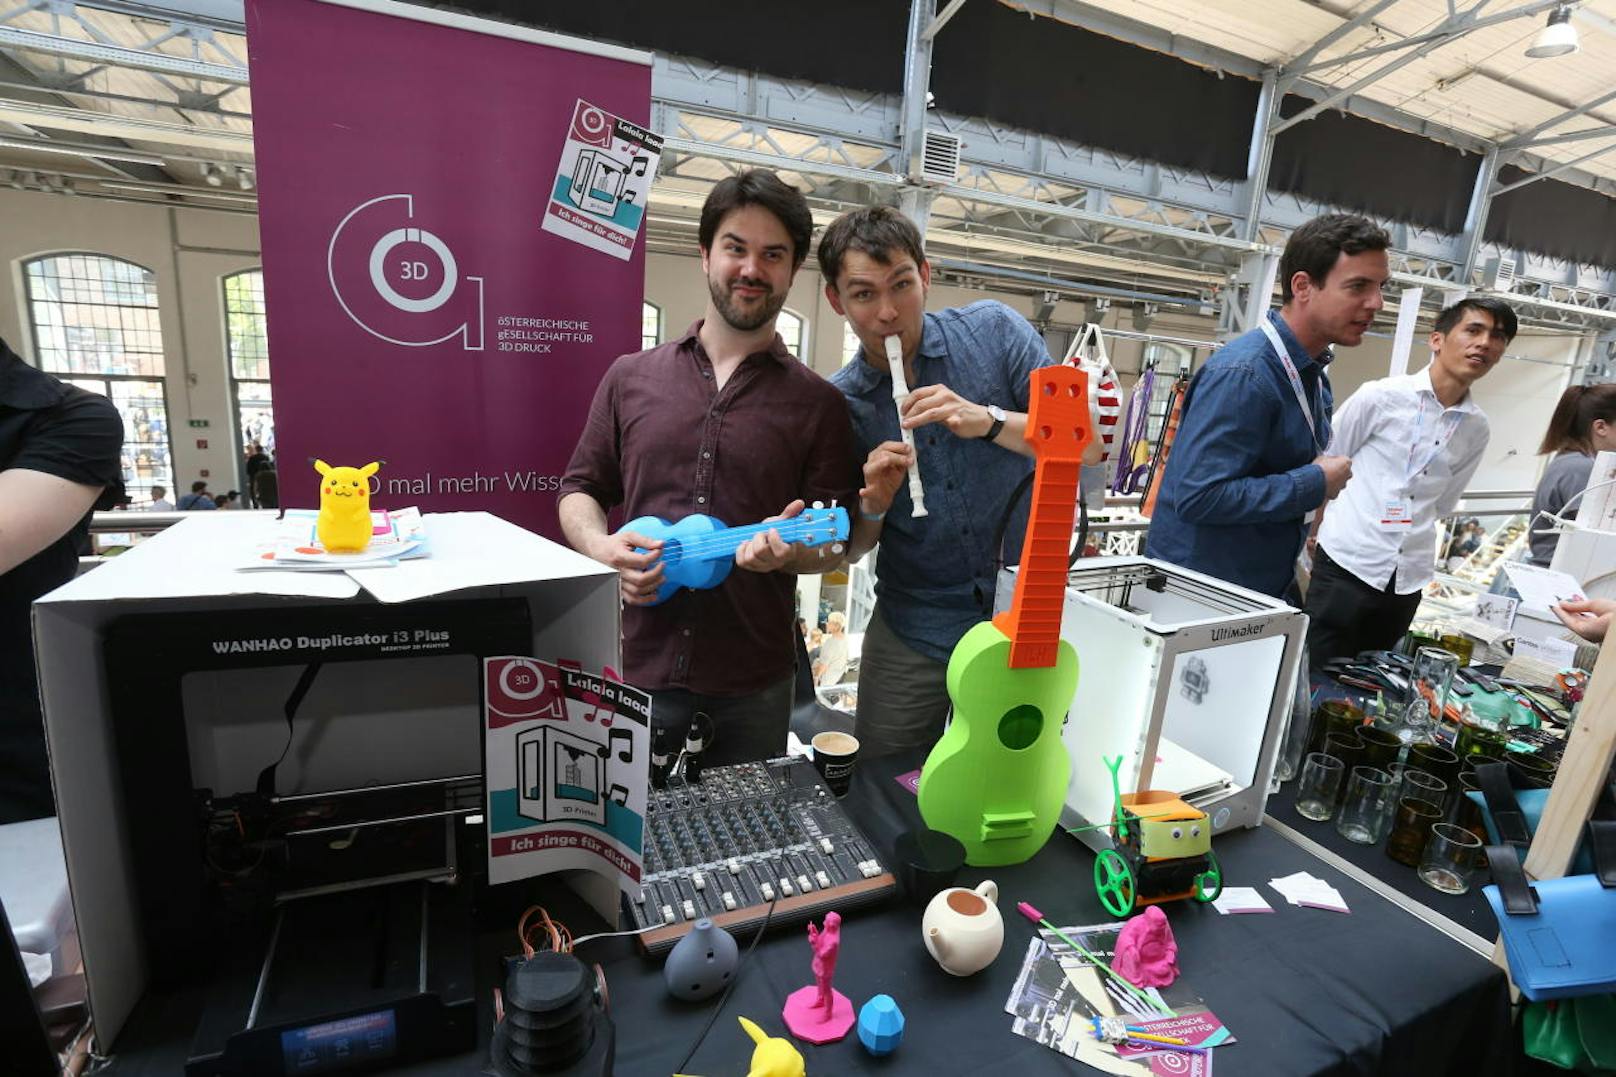 Diese zwei Herren haben einen Faible für 3D-Druck, sie werden gleich ihre Instrumente selber drucken. Der 3D-Drucker kann übrigens auch Musik machen.